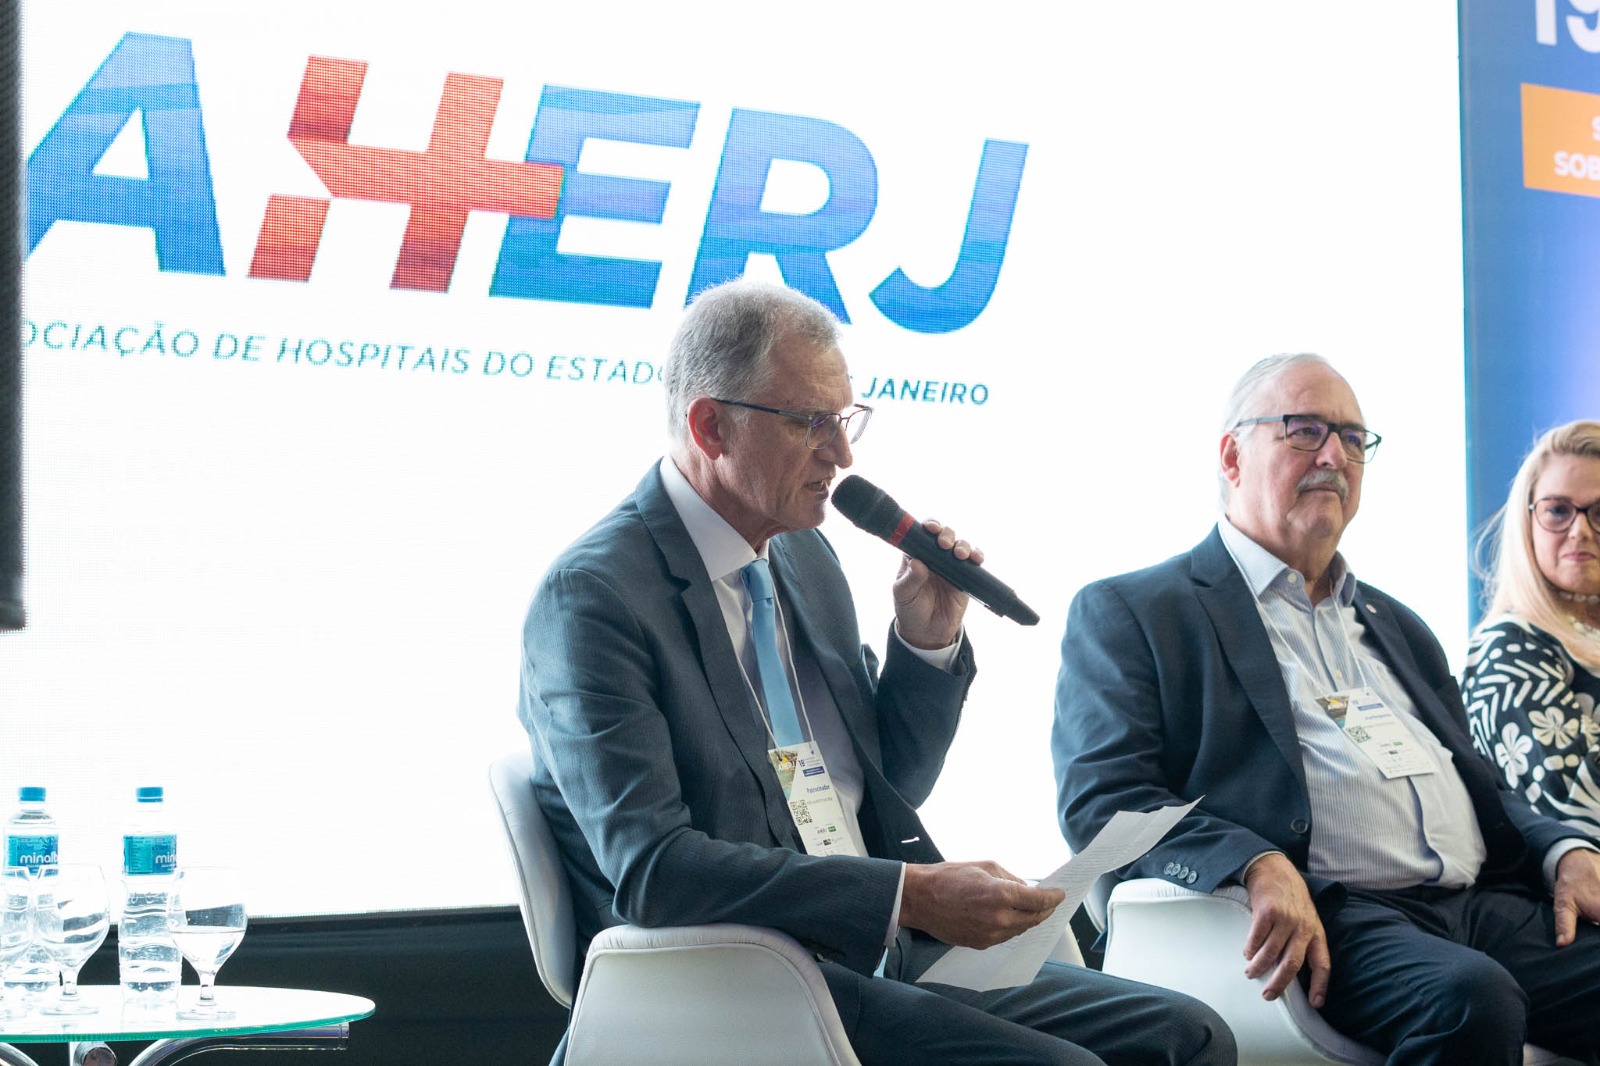 19º Encontro de Hospitais do estado do Rio de Janeiro